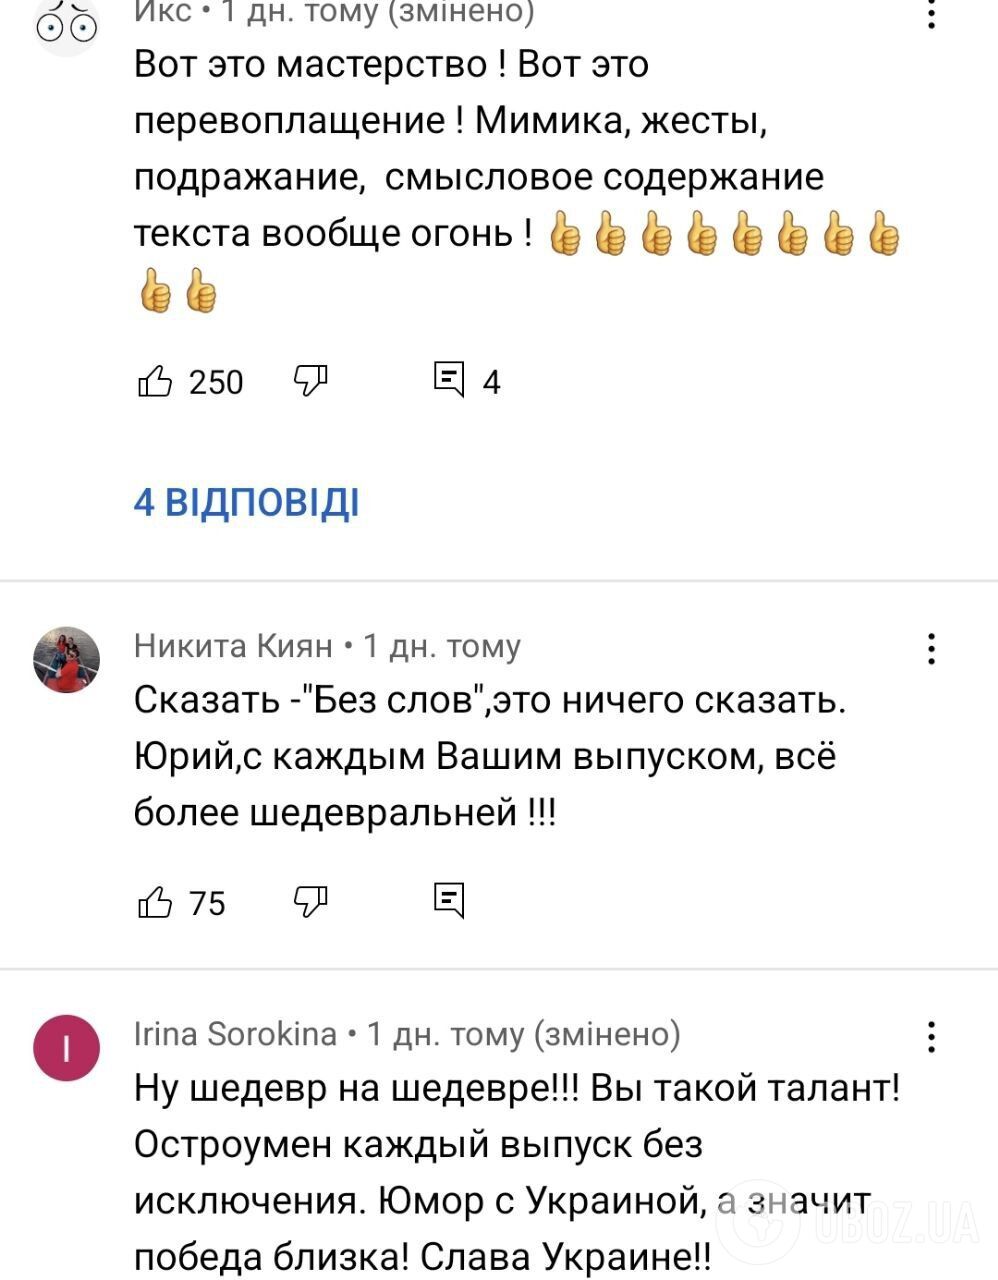 Скриншоты комментариев под видео Юрия Великого.